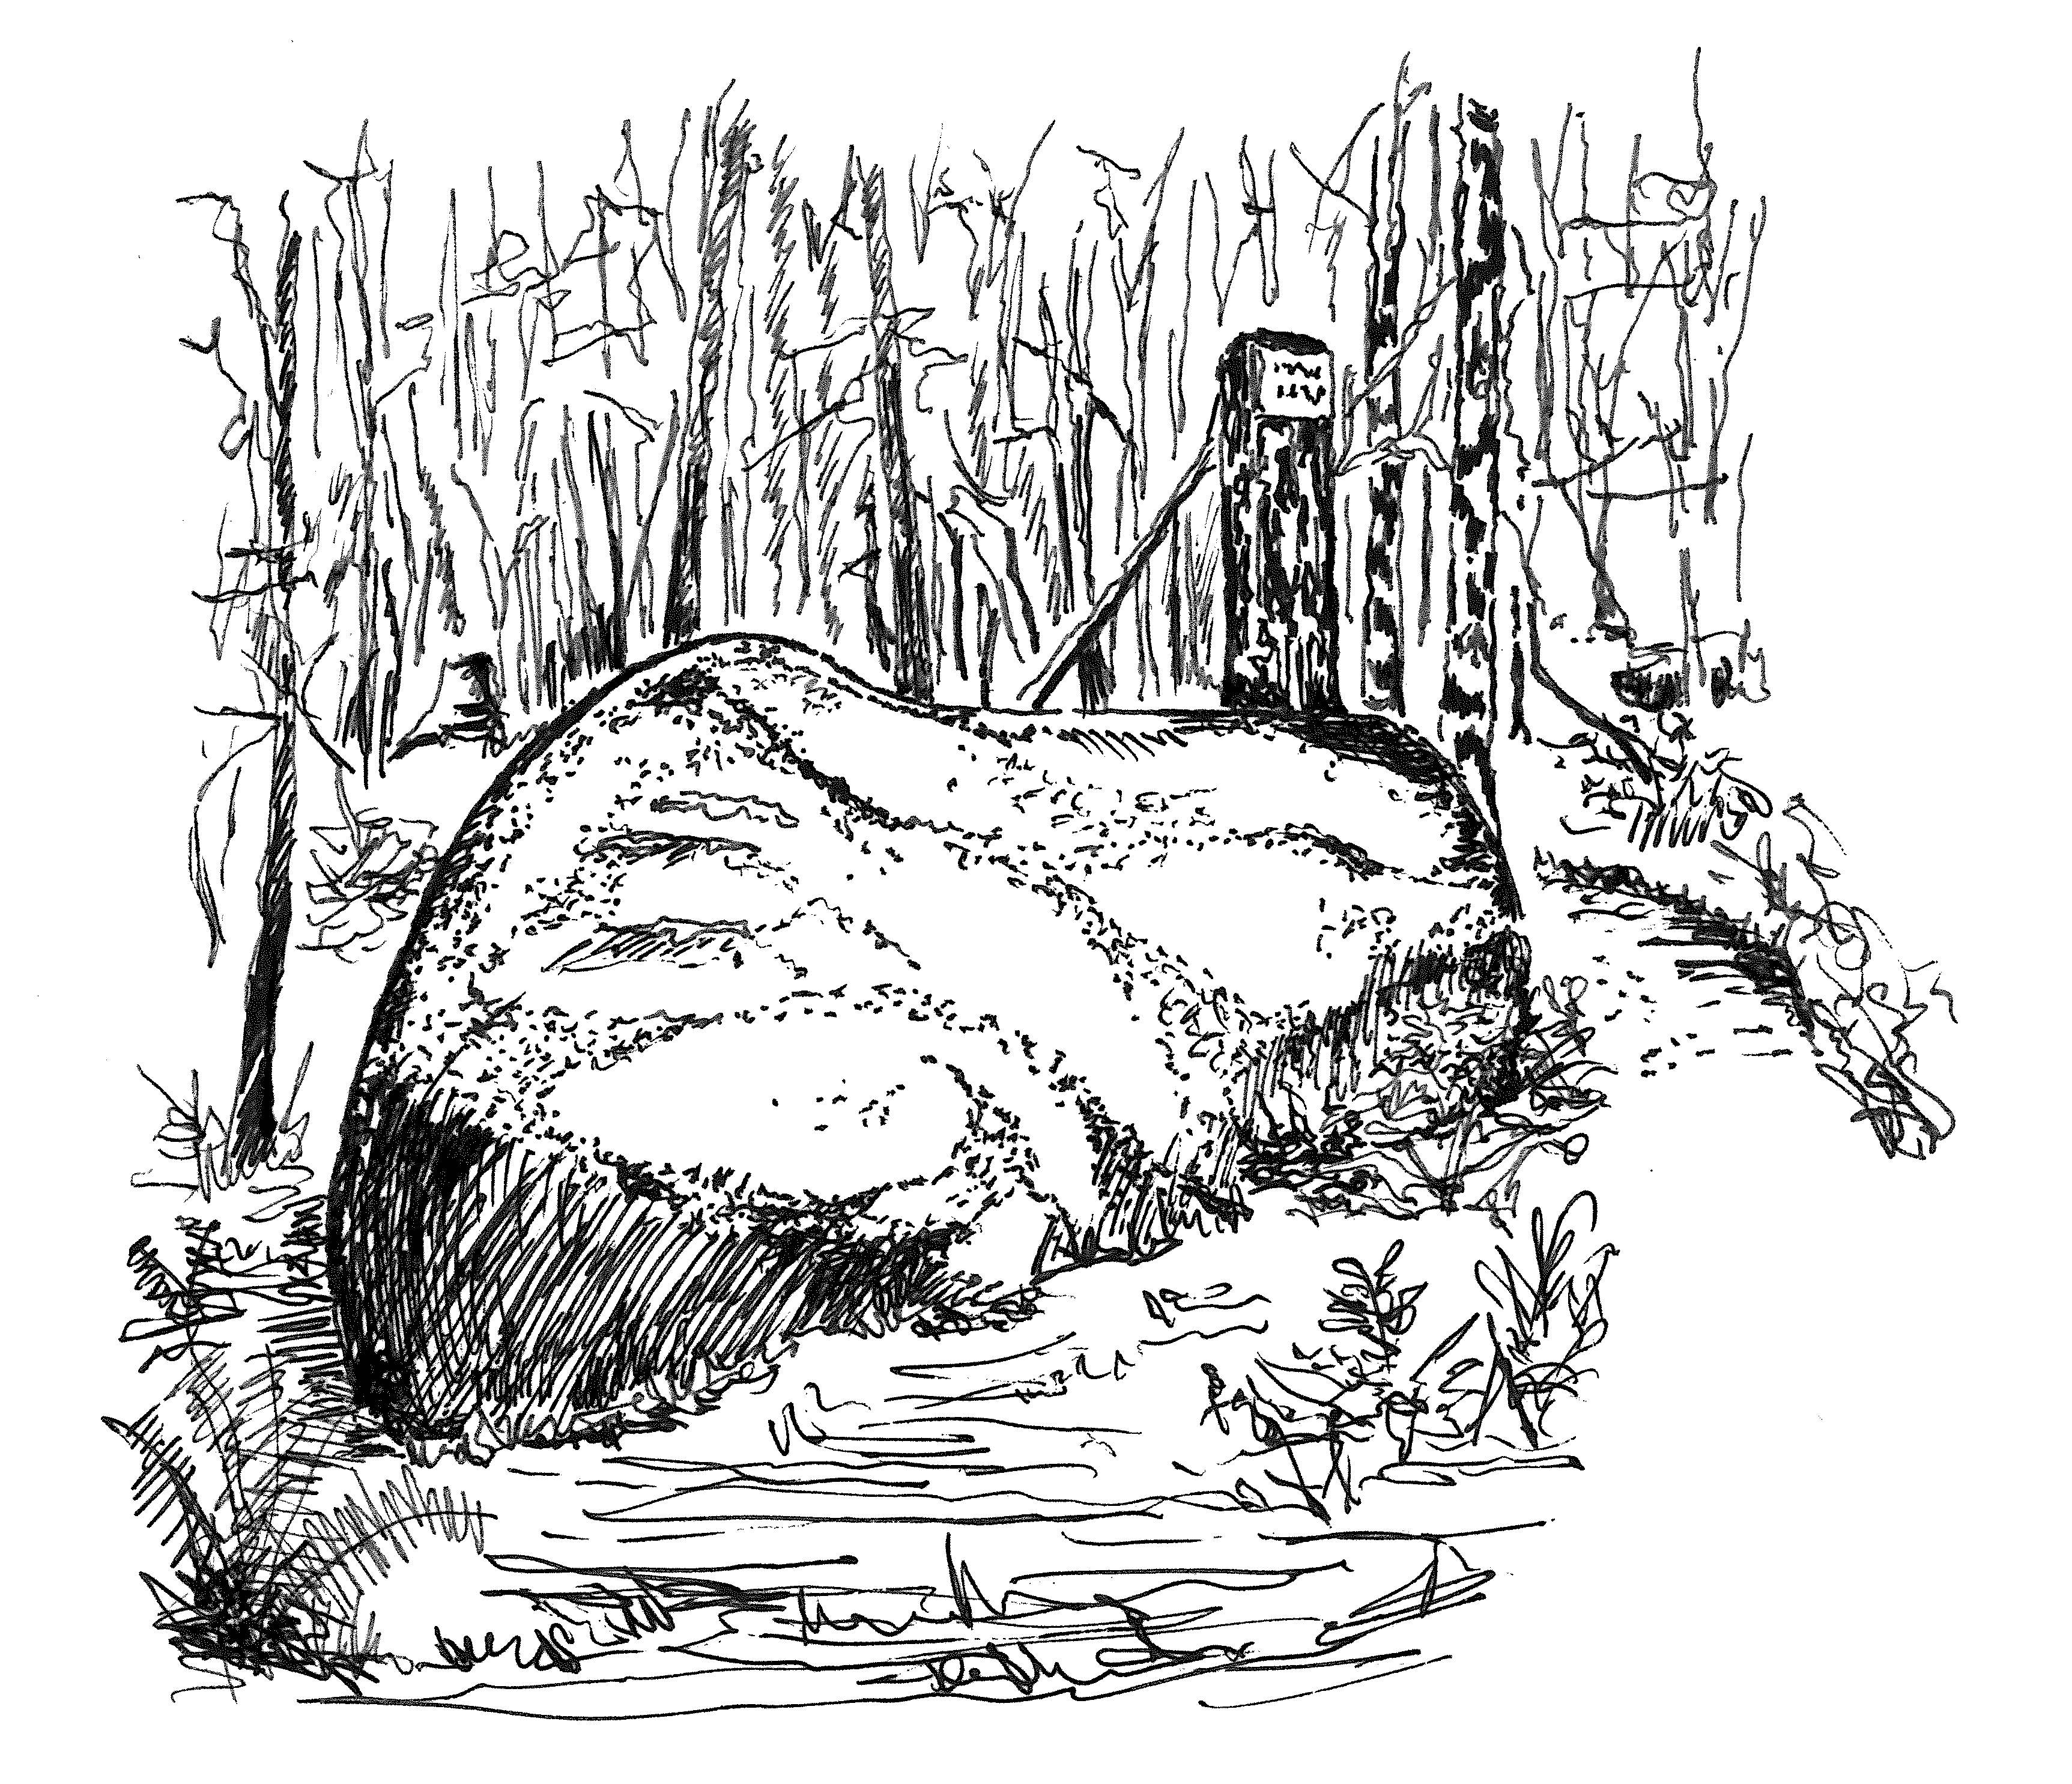 Schwarz-weiß Zeichnung vom Steinernen Gaul. Das auffallende Felsgebilde lässt auf ein liegendes Pferd mit Fohlen schließen